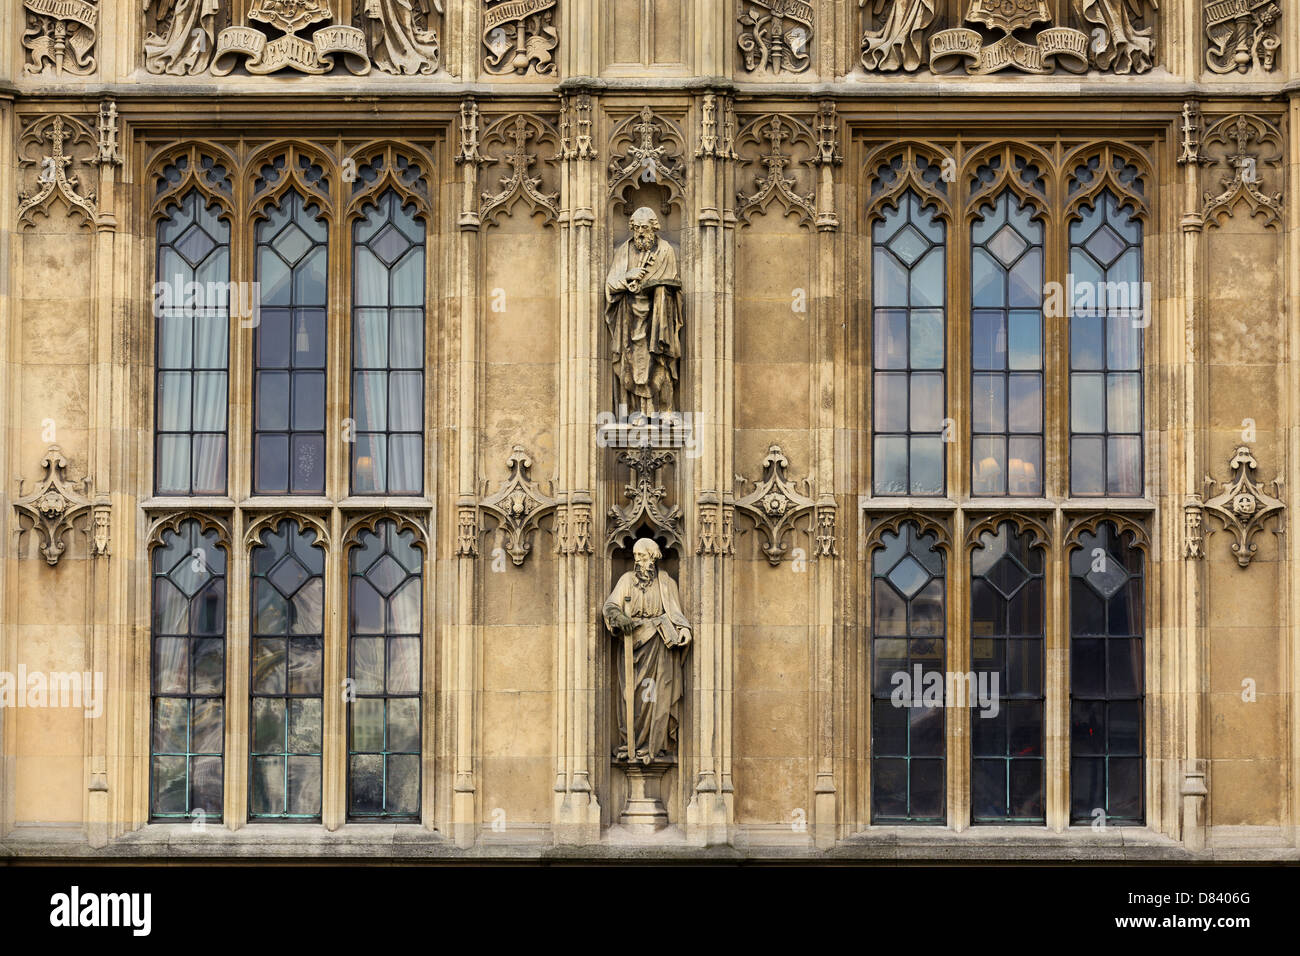 Palast von Westminster Architektur Details, London, Vereinigtes Königreich Stockfoto